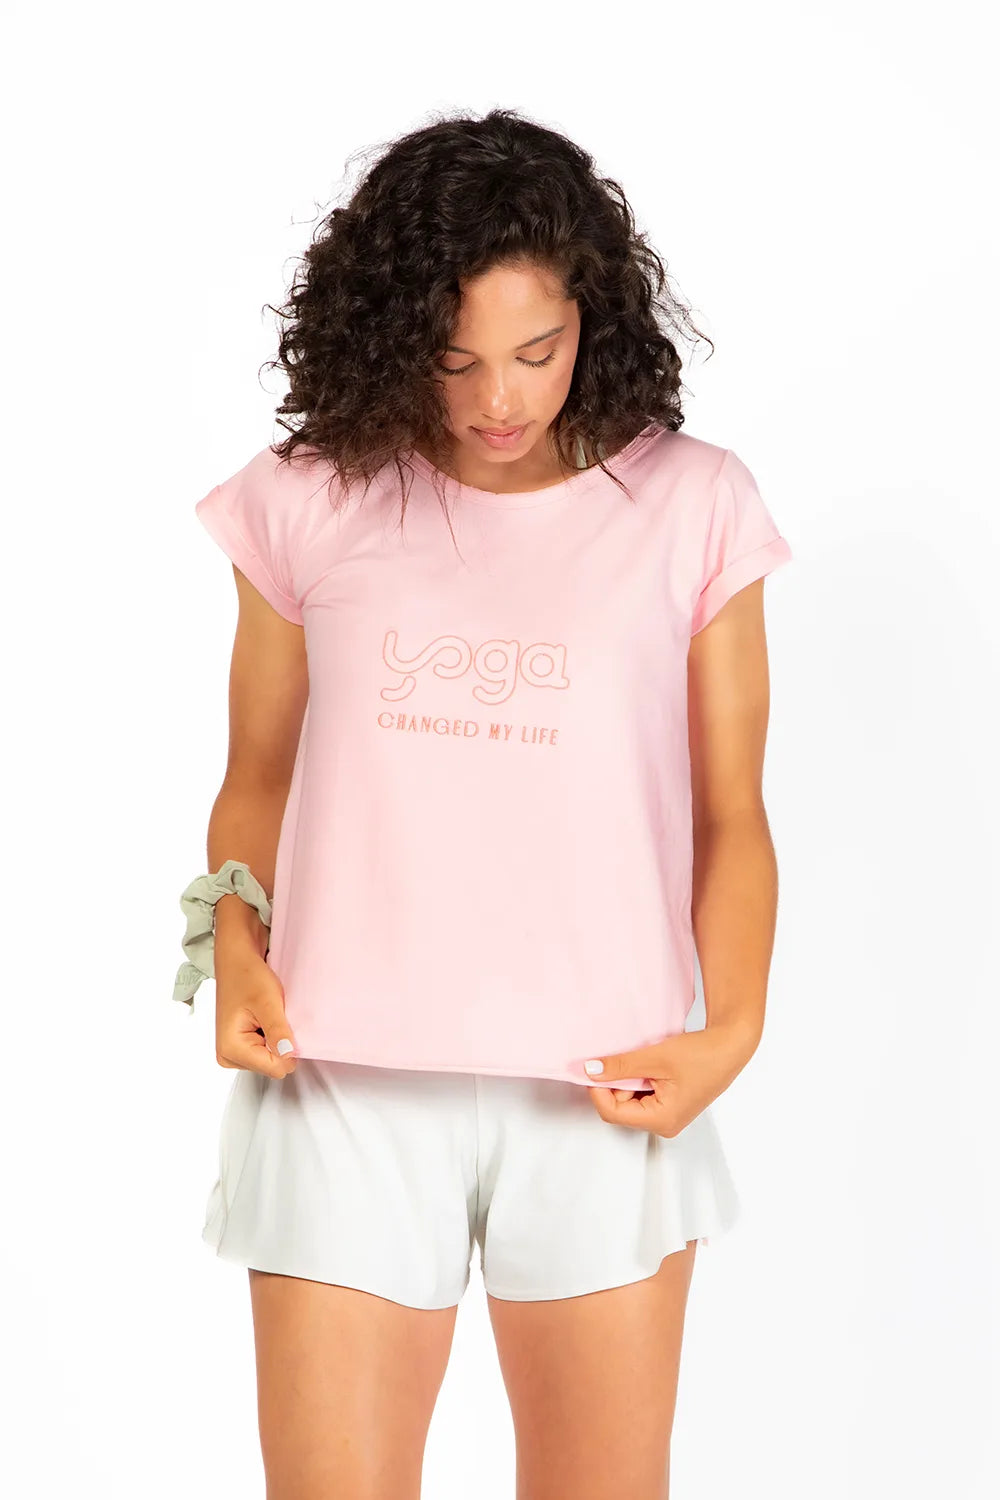 Camiseta Tshirt Yoga Changed de manga corta en color rosa de Yogimi. Un básico deal para combinar con cualquier prenda.